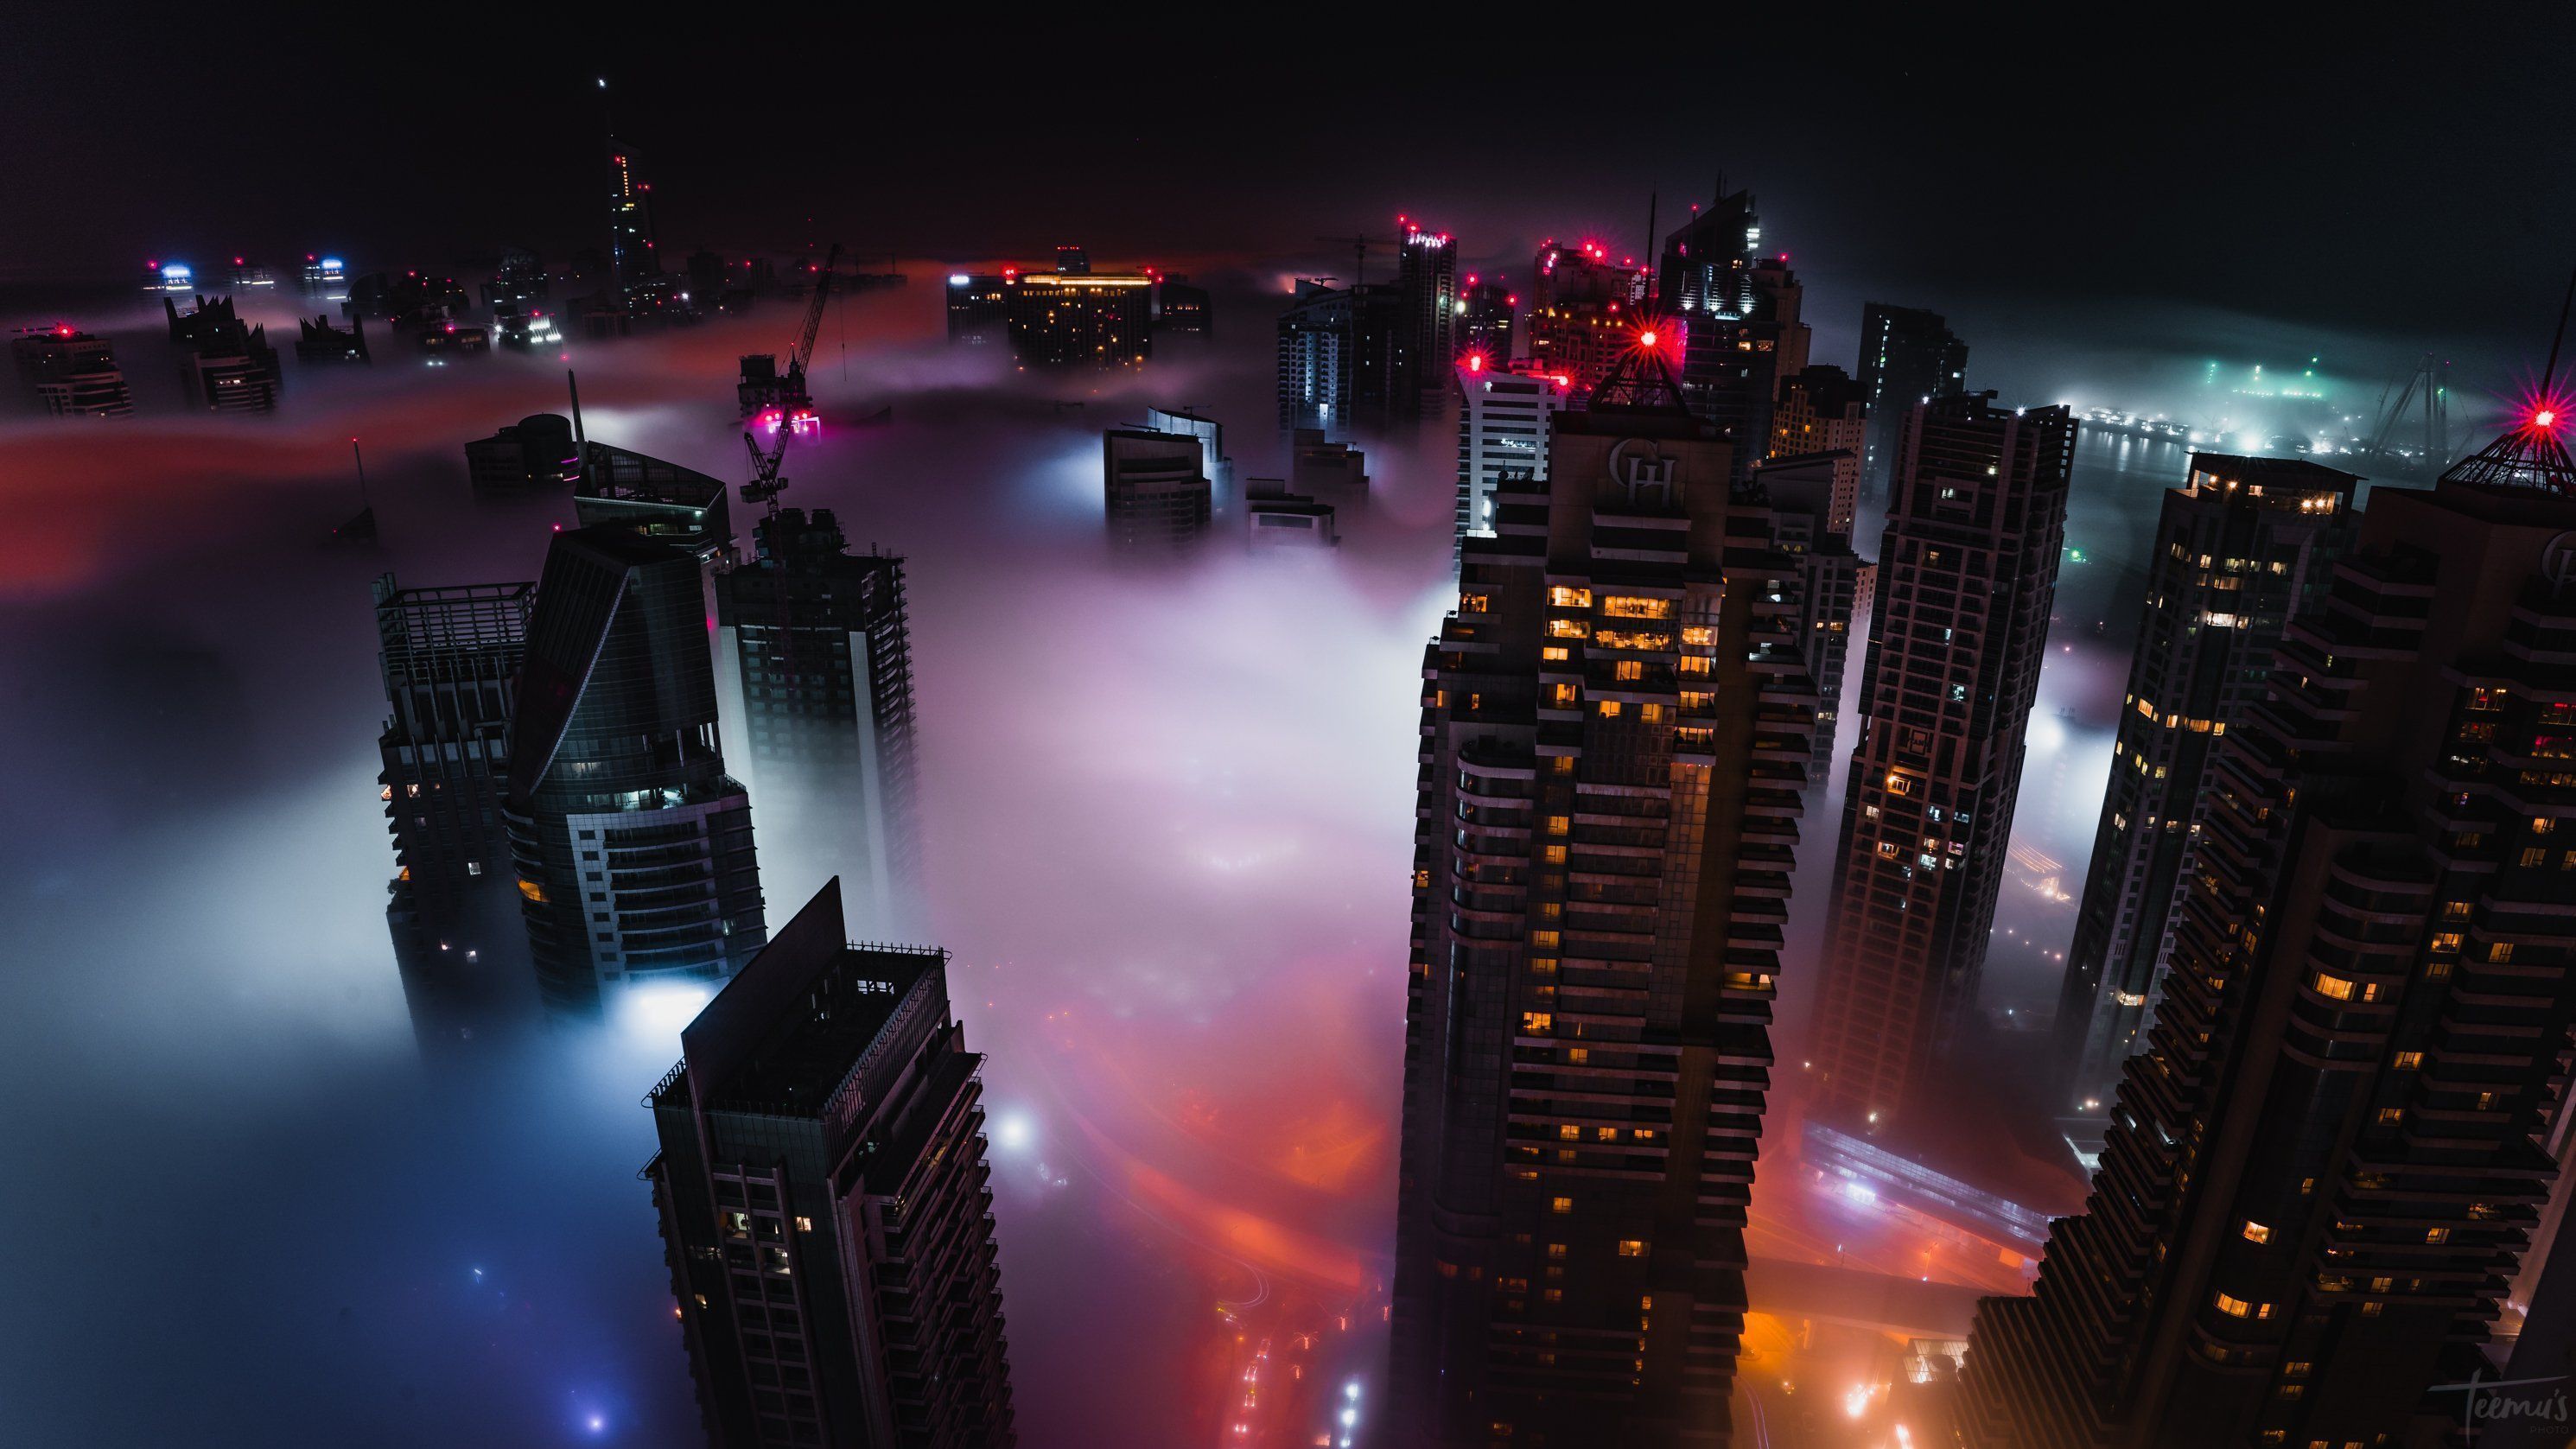 A city in the clouds - Cyberpunk 2077